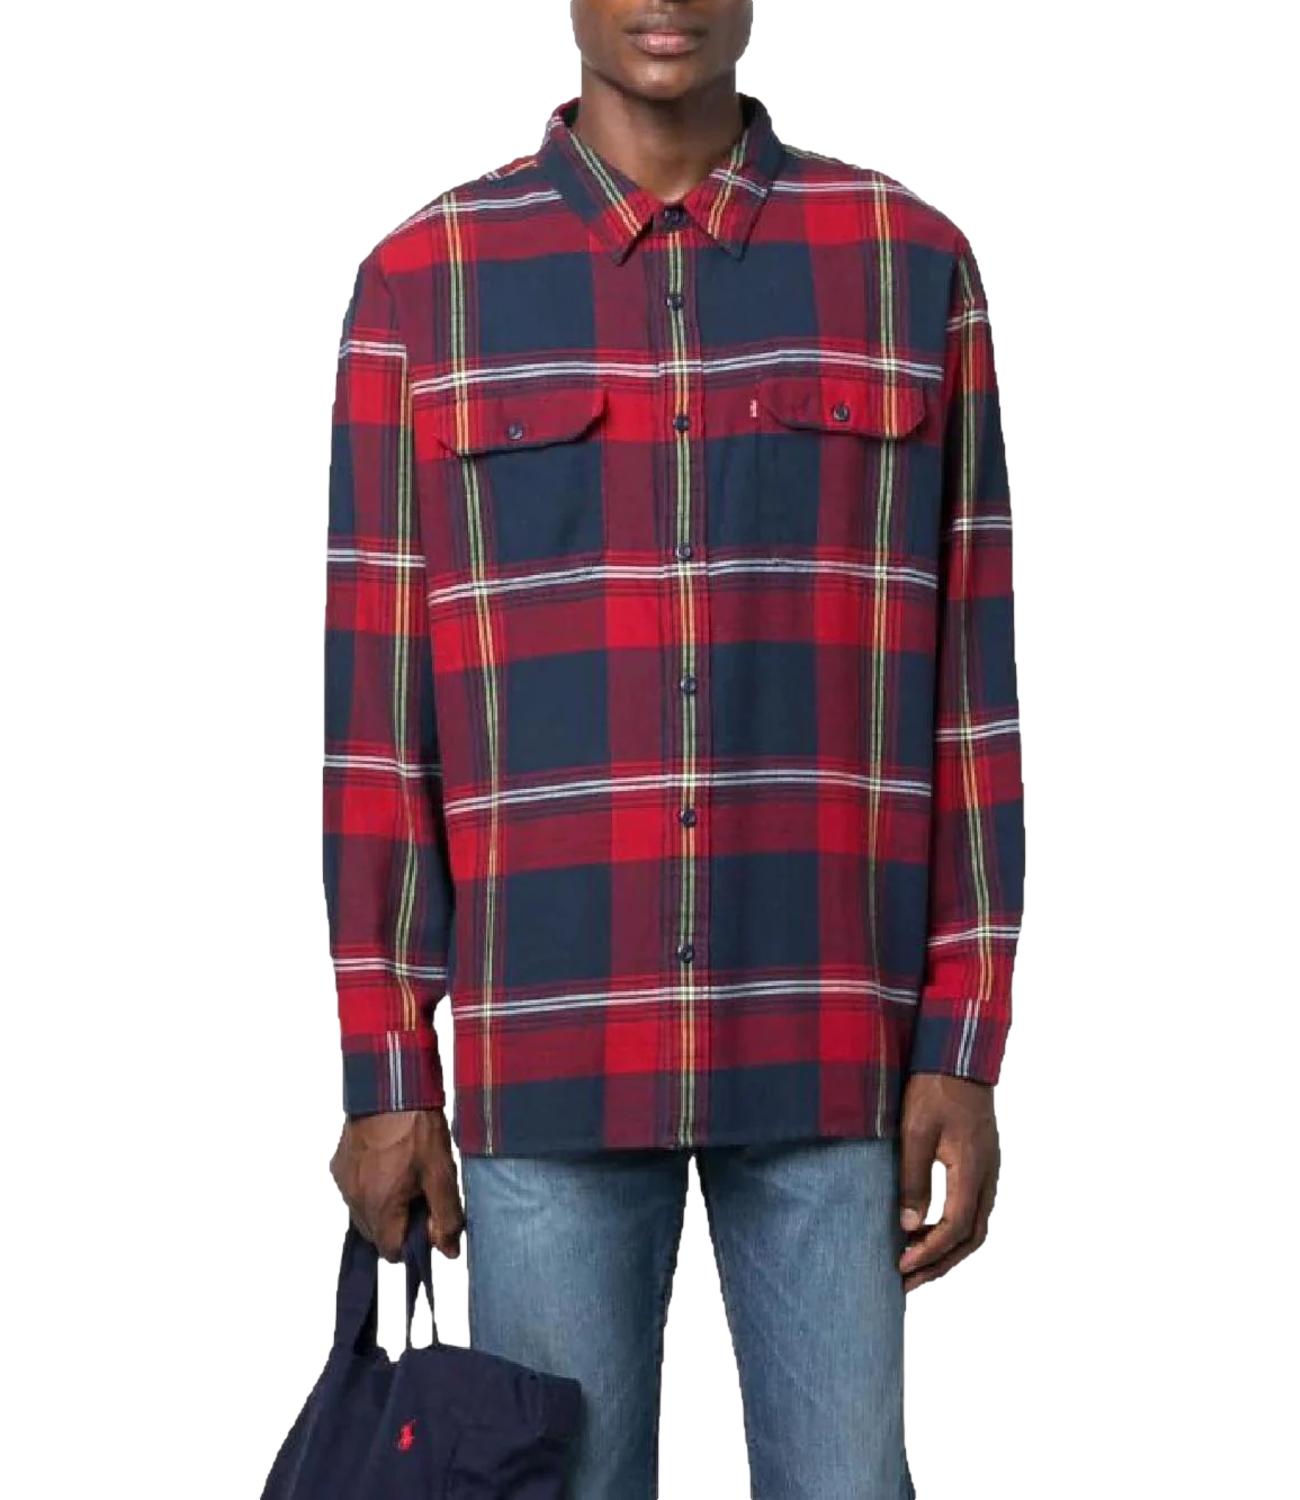 Camicia a quadri in lana da Uomo Blu/rosso JACKSON WORKER